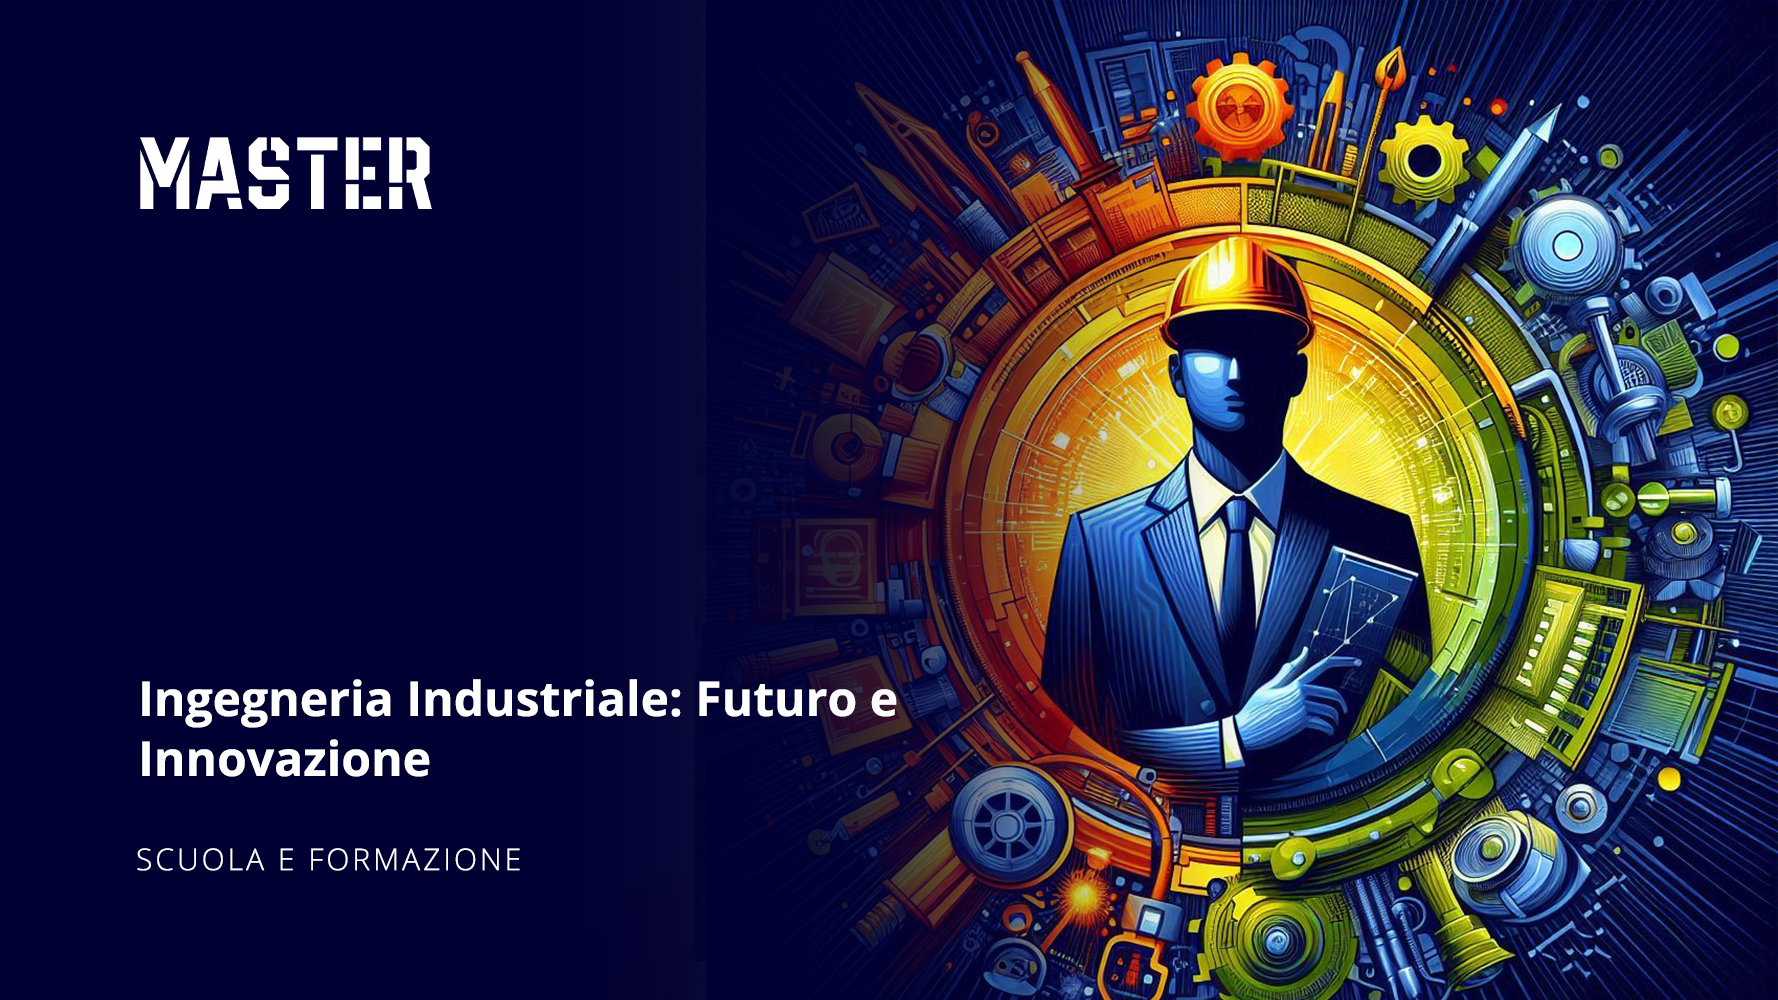 Ingegneria Industriale: Futuro e Innovazione